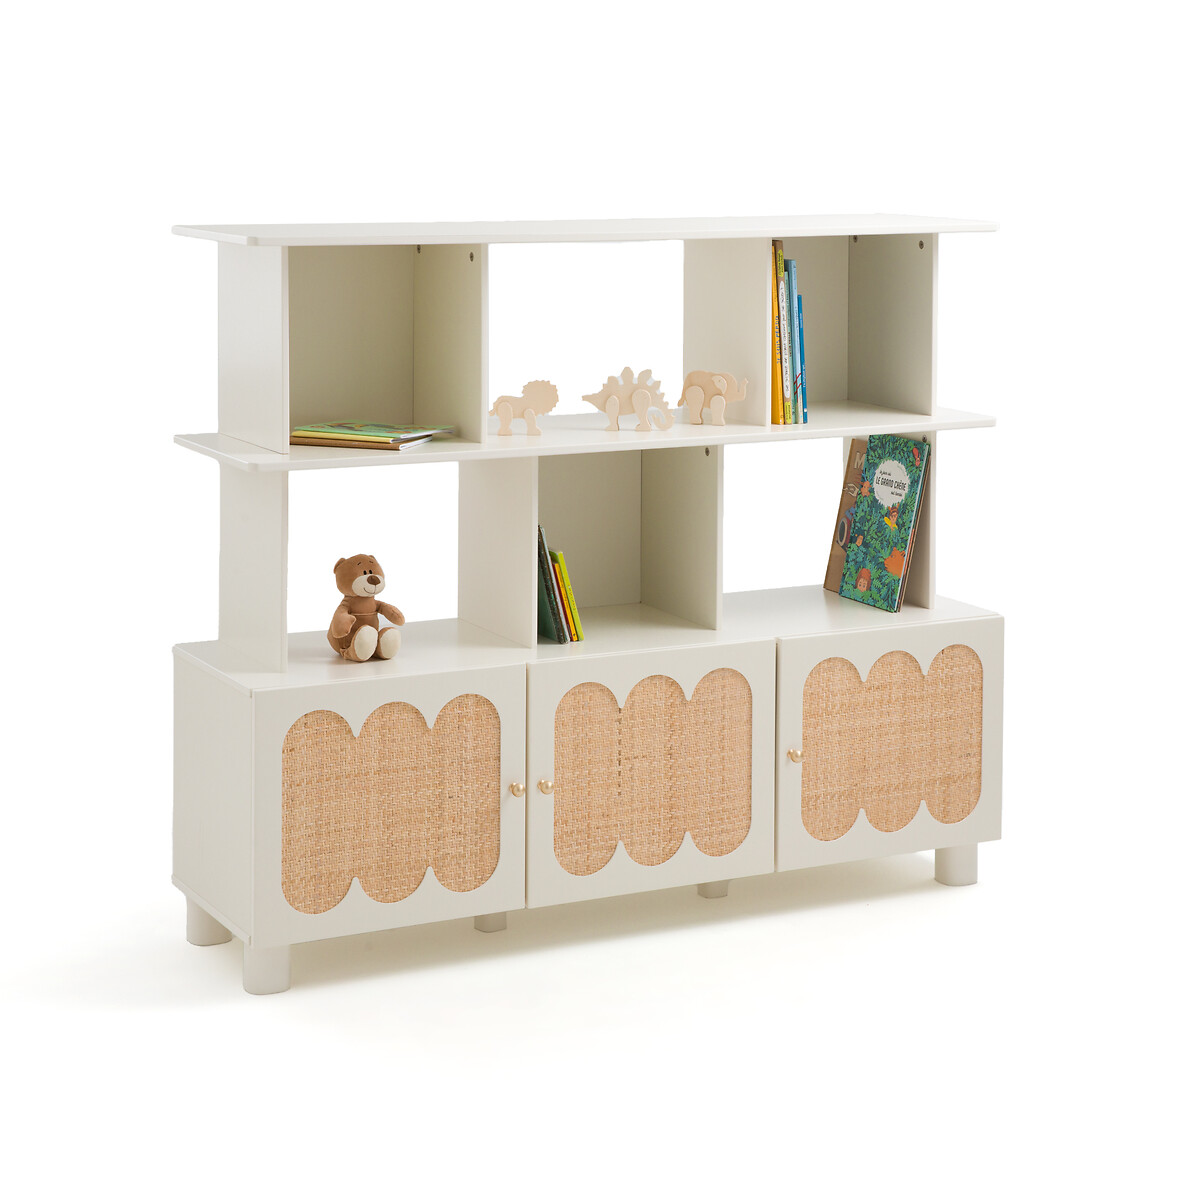 Шкаф книжный-этажерка Ptilu единый размер каштановый шкаф книжный детский montessori единый размер белый